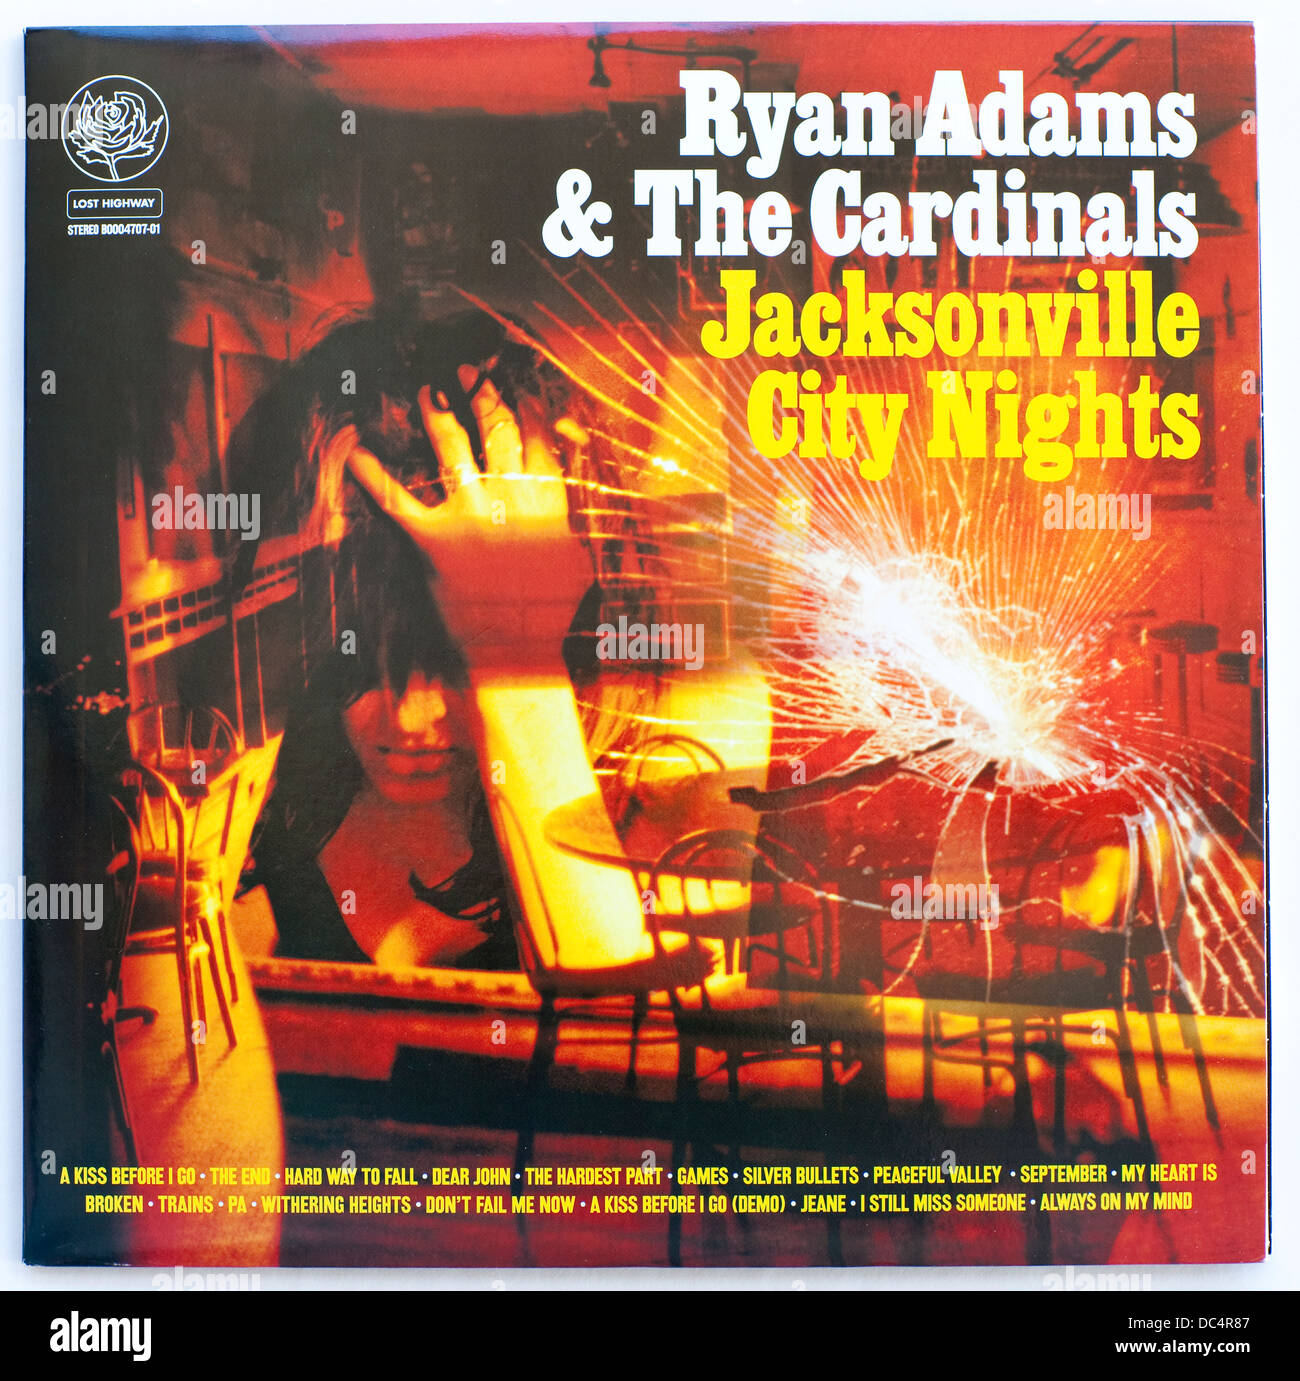 Ryan Adams & The Cardinals - Jacksonville City Nights, 2005 doppio album su Lost Highway Records - solo per uso editoriale Foto Stock